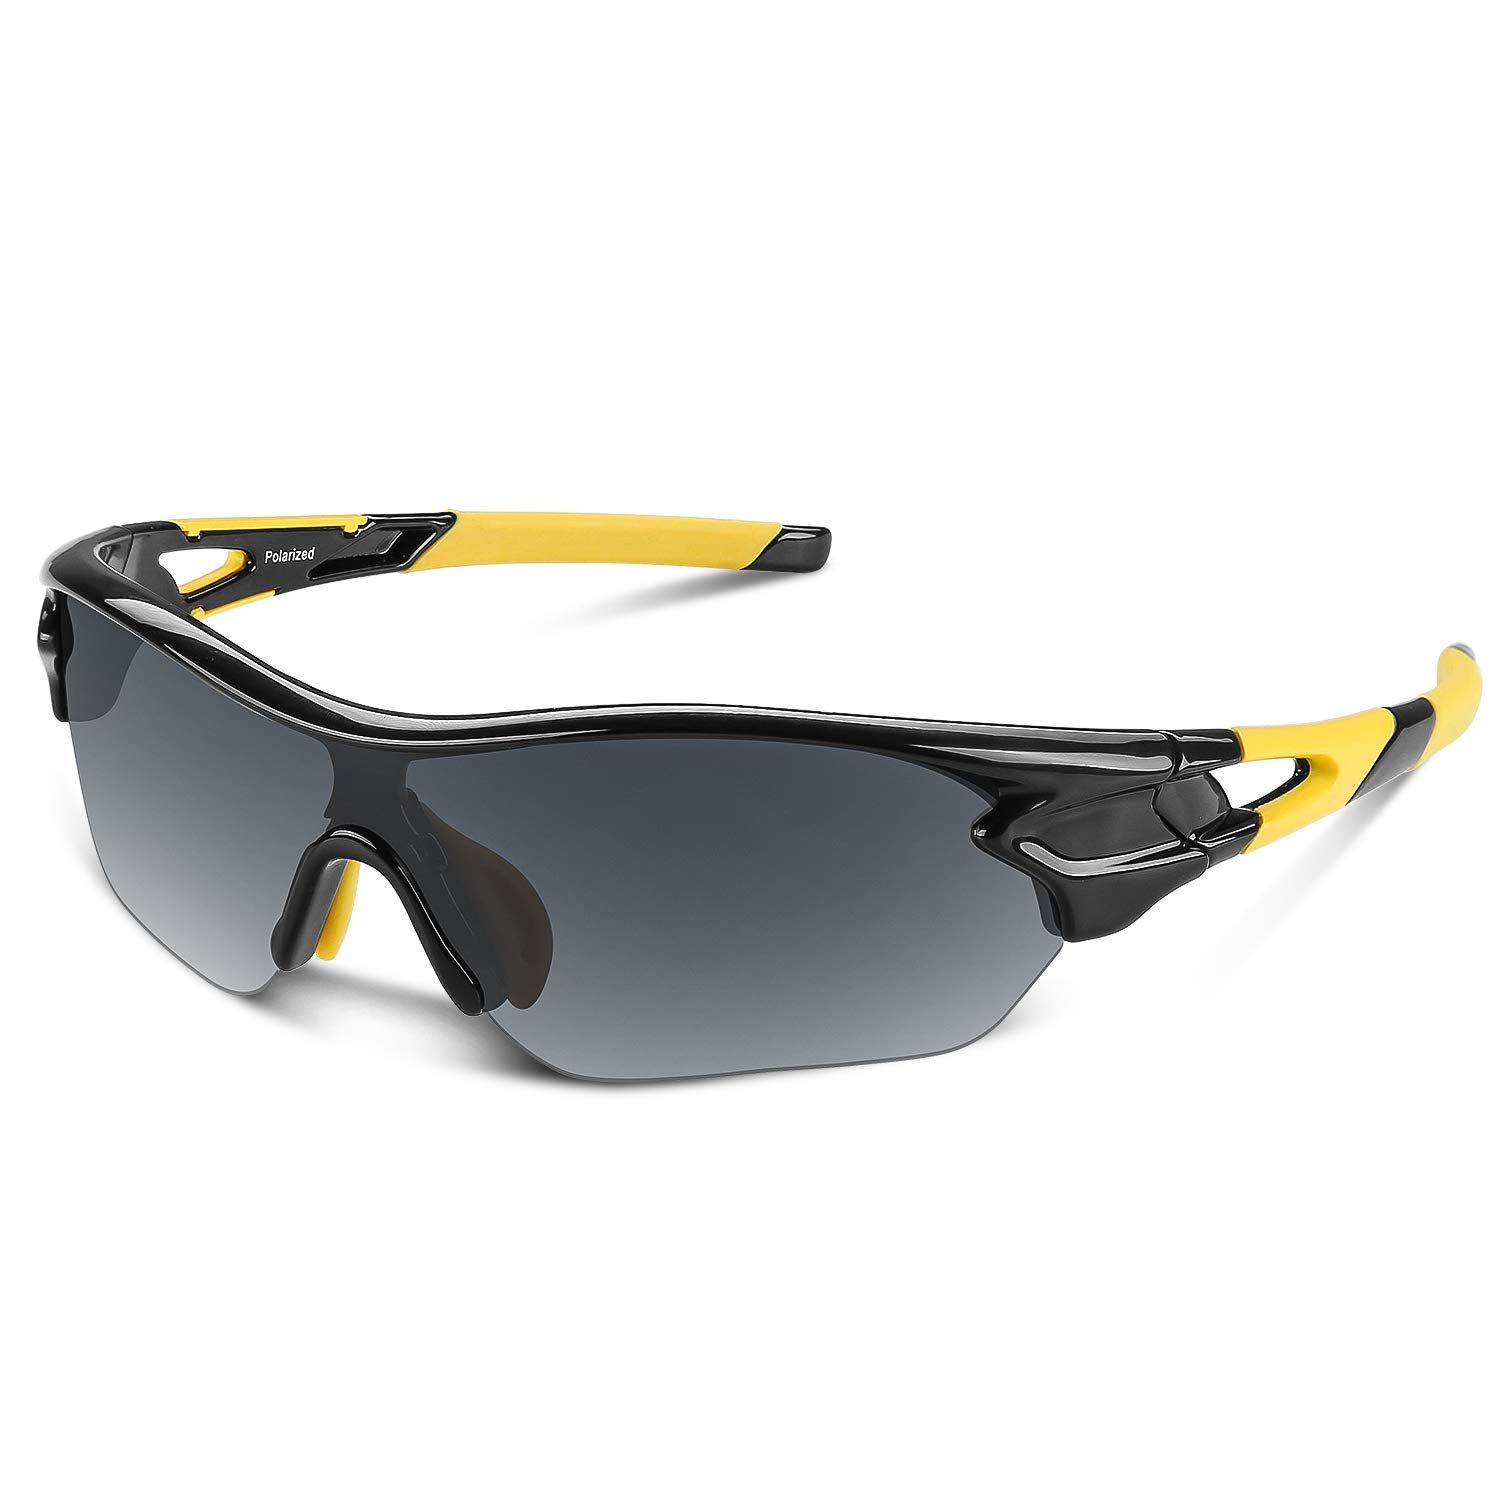 スポーツサングラス 偏光レンズ 自転車 登山 釣り 野球 ゴルフ ランニング ドライブ バイク テニス スキー 超軽量 UV400 TAC TR90 紫外線防止 メンズ レディース ユニセックス サングラス 安全 清晰